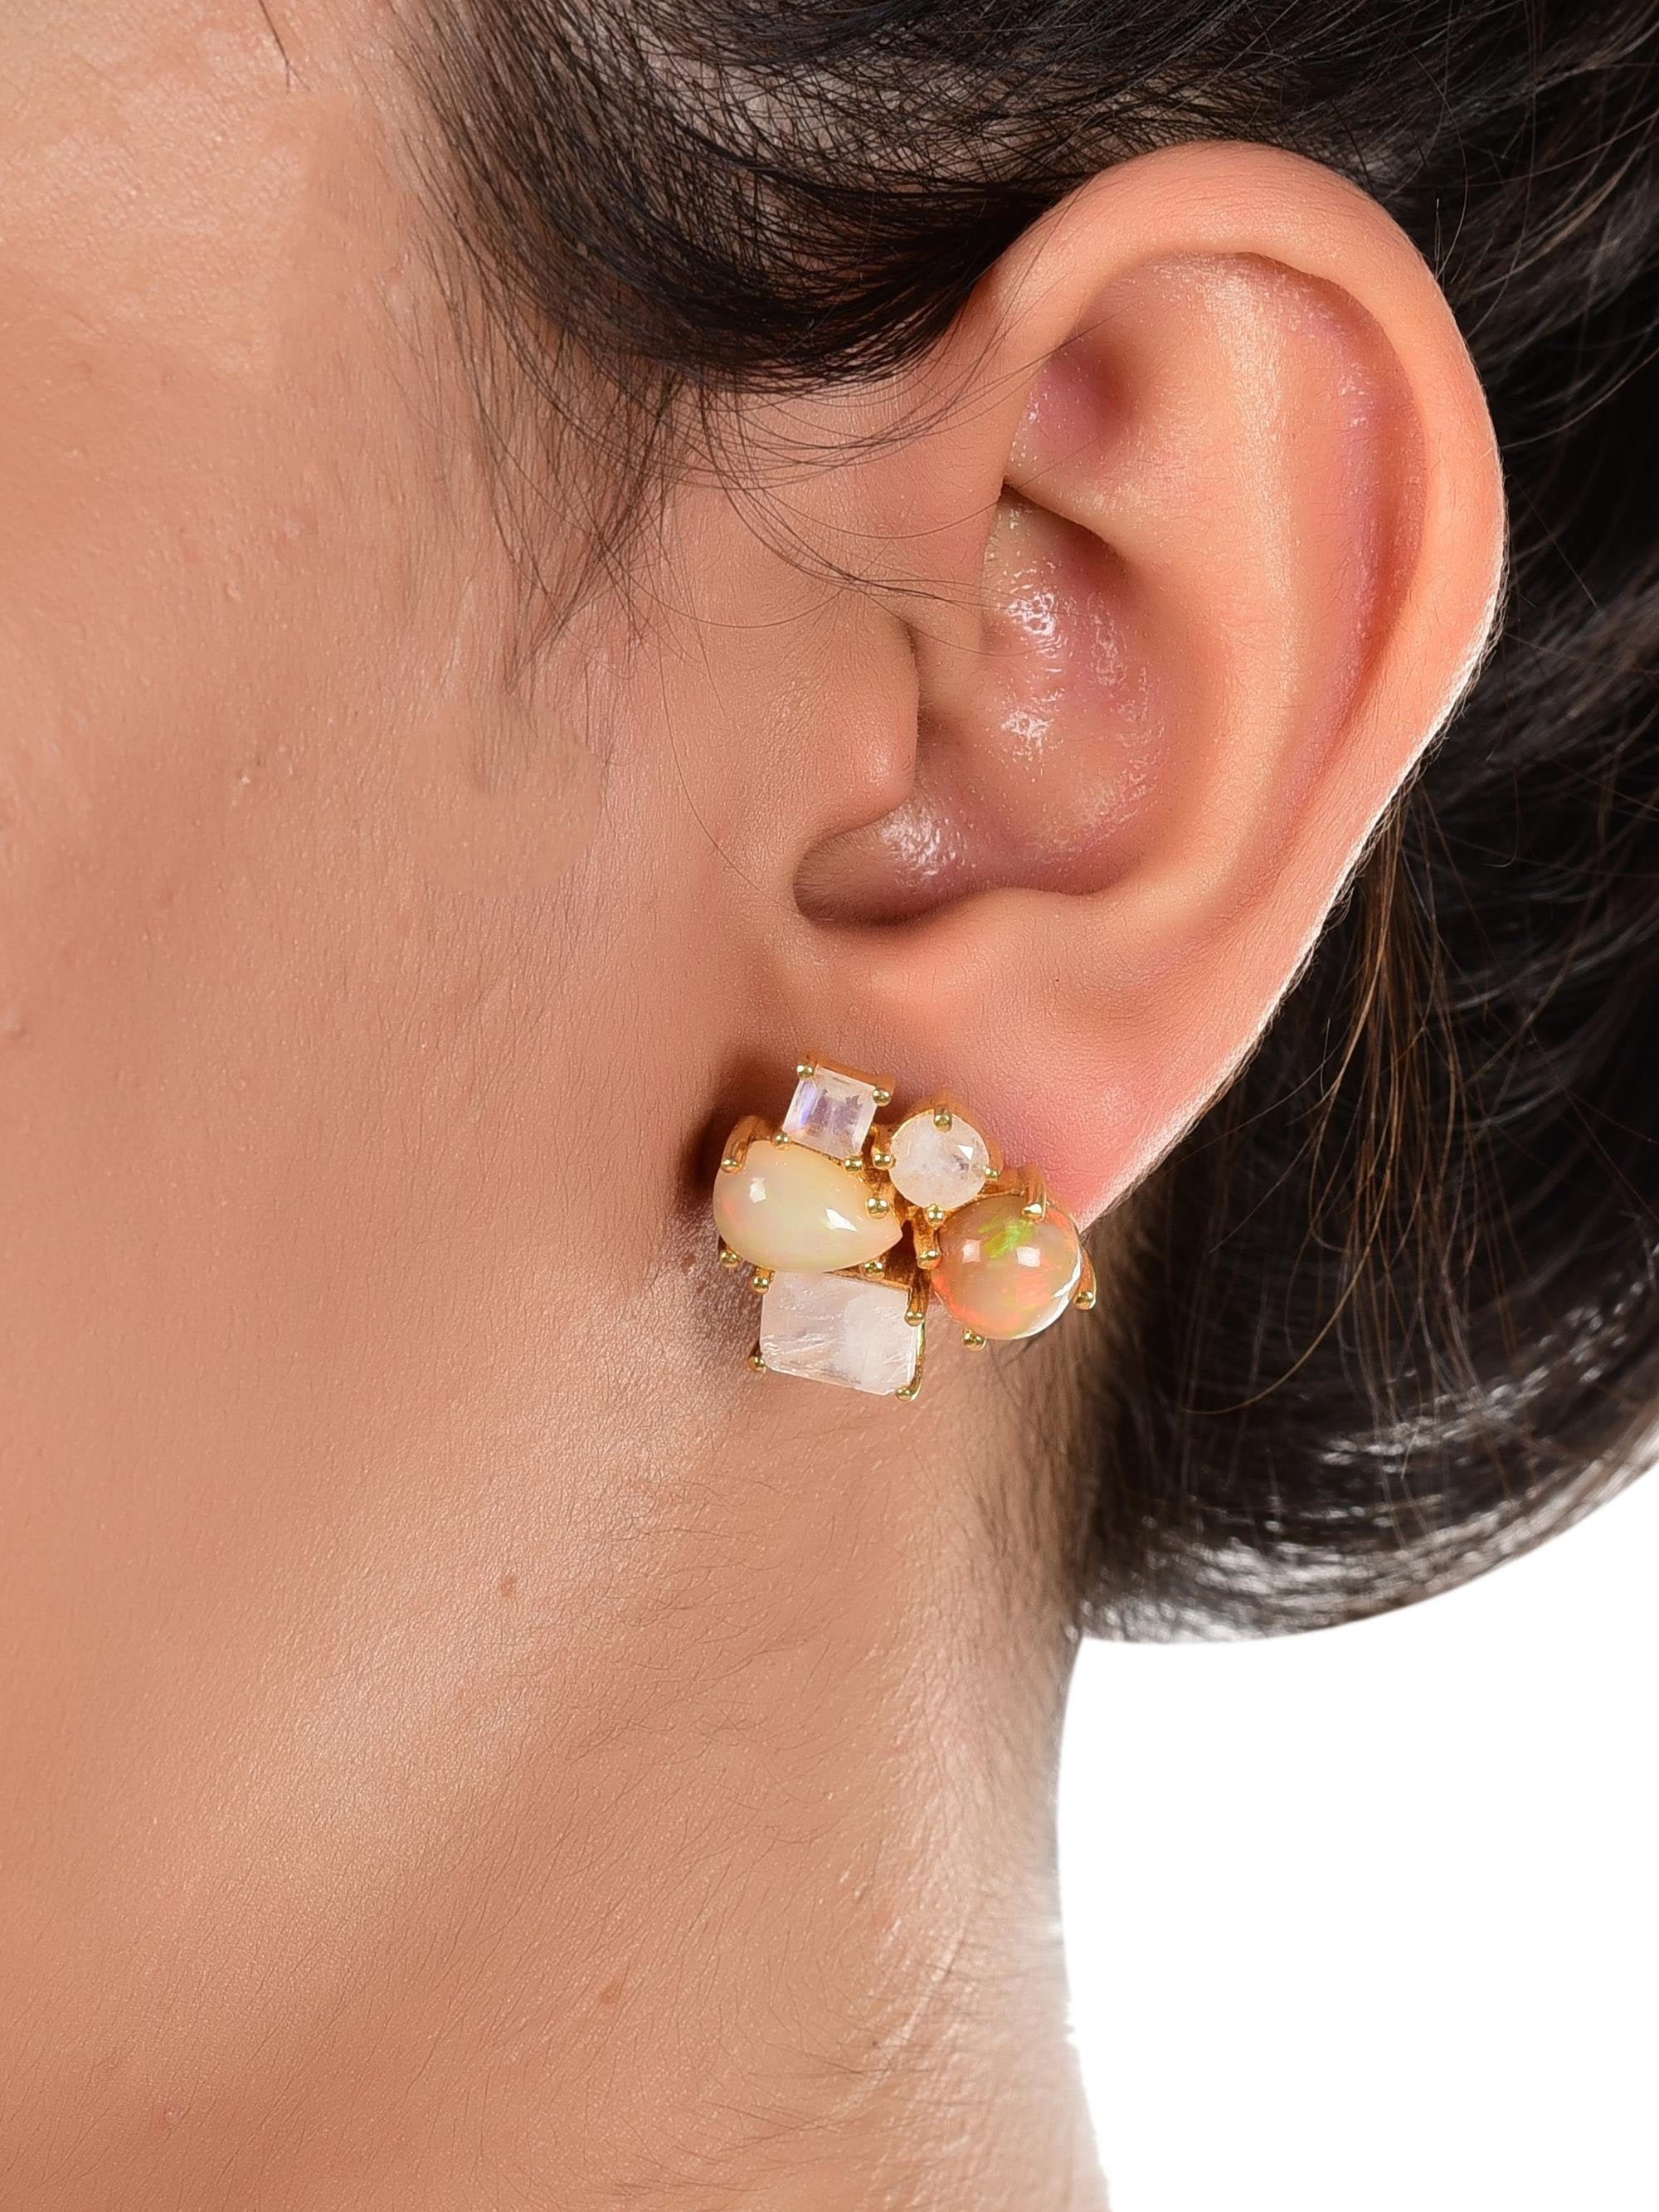 Buy Ethiopian Opal Earrings Welo Opal Earrings Fire Opal Earrings Online in  India  Etsy